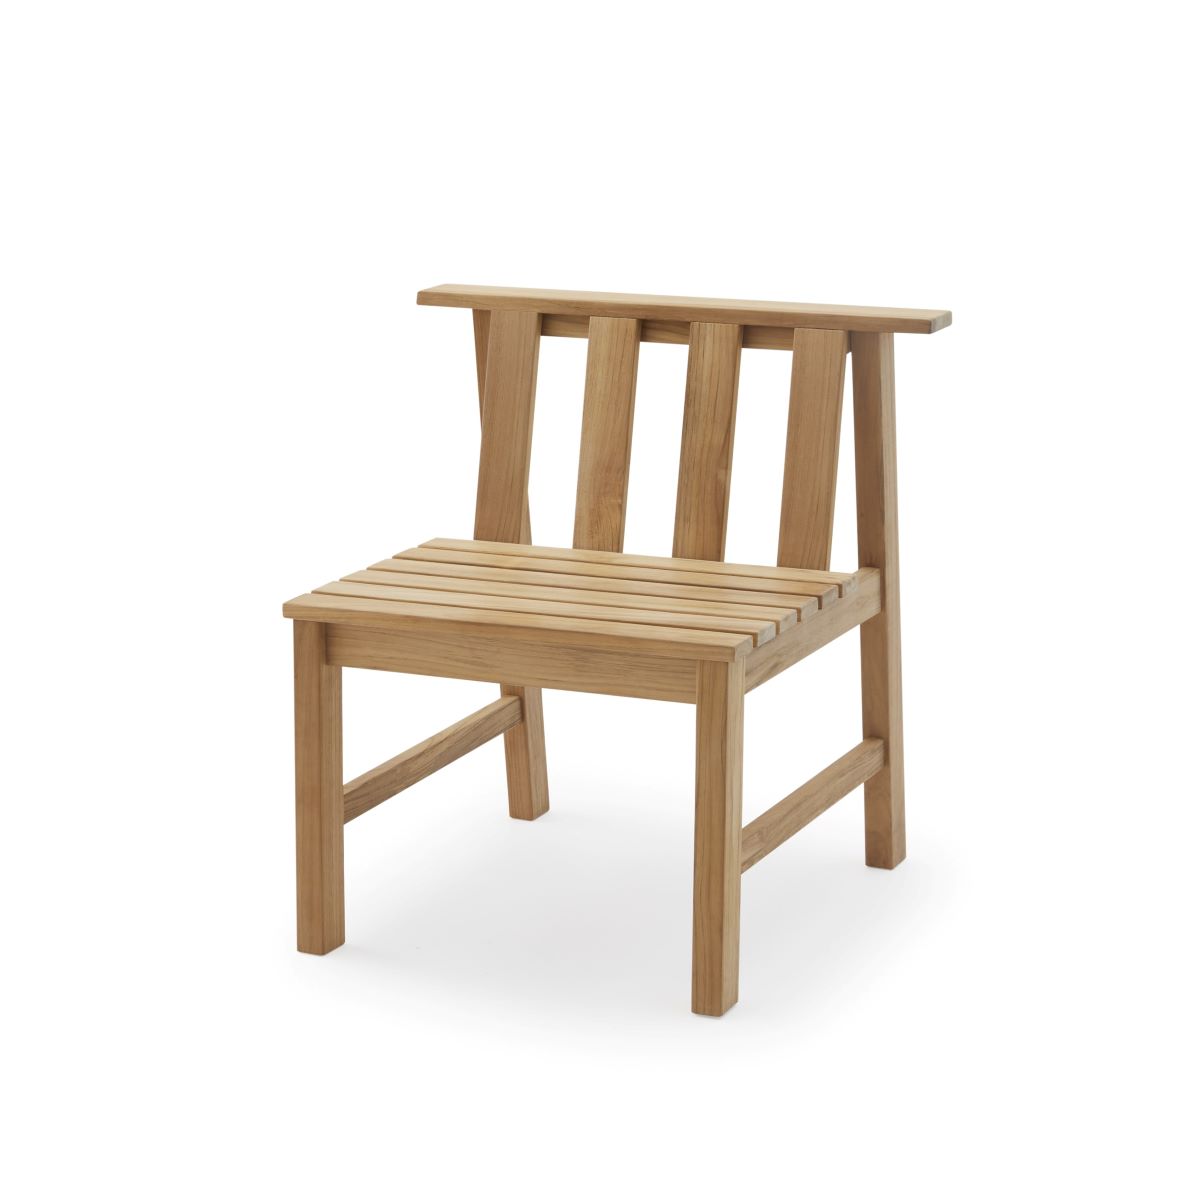 https://bo.alinhadavizinha.com/FileUploads/produtos/mobiliario/cadeiras/1350601_plank-chair_1.jpg